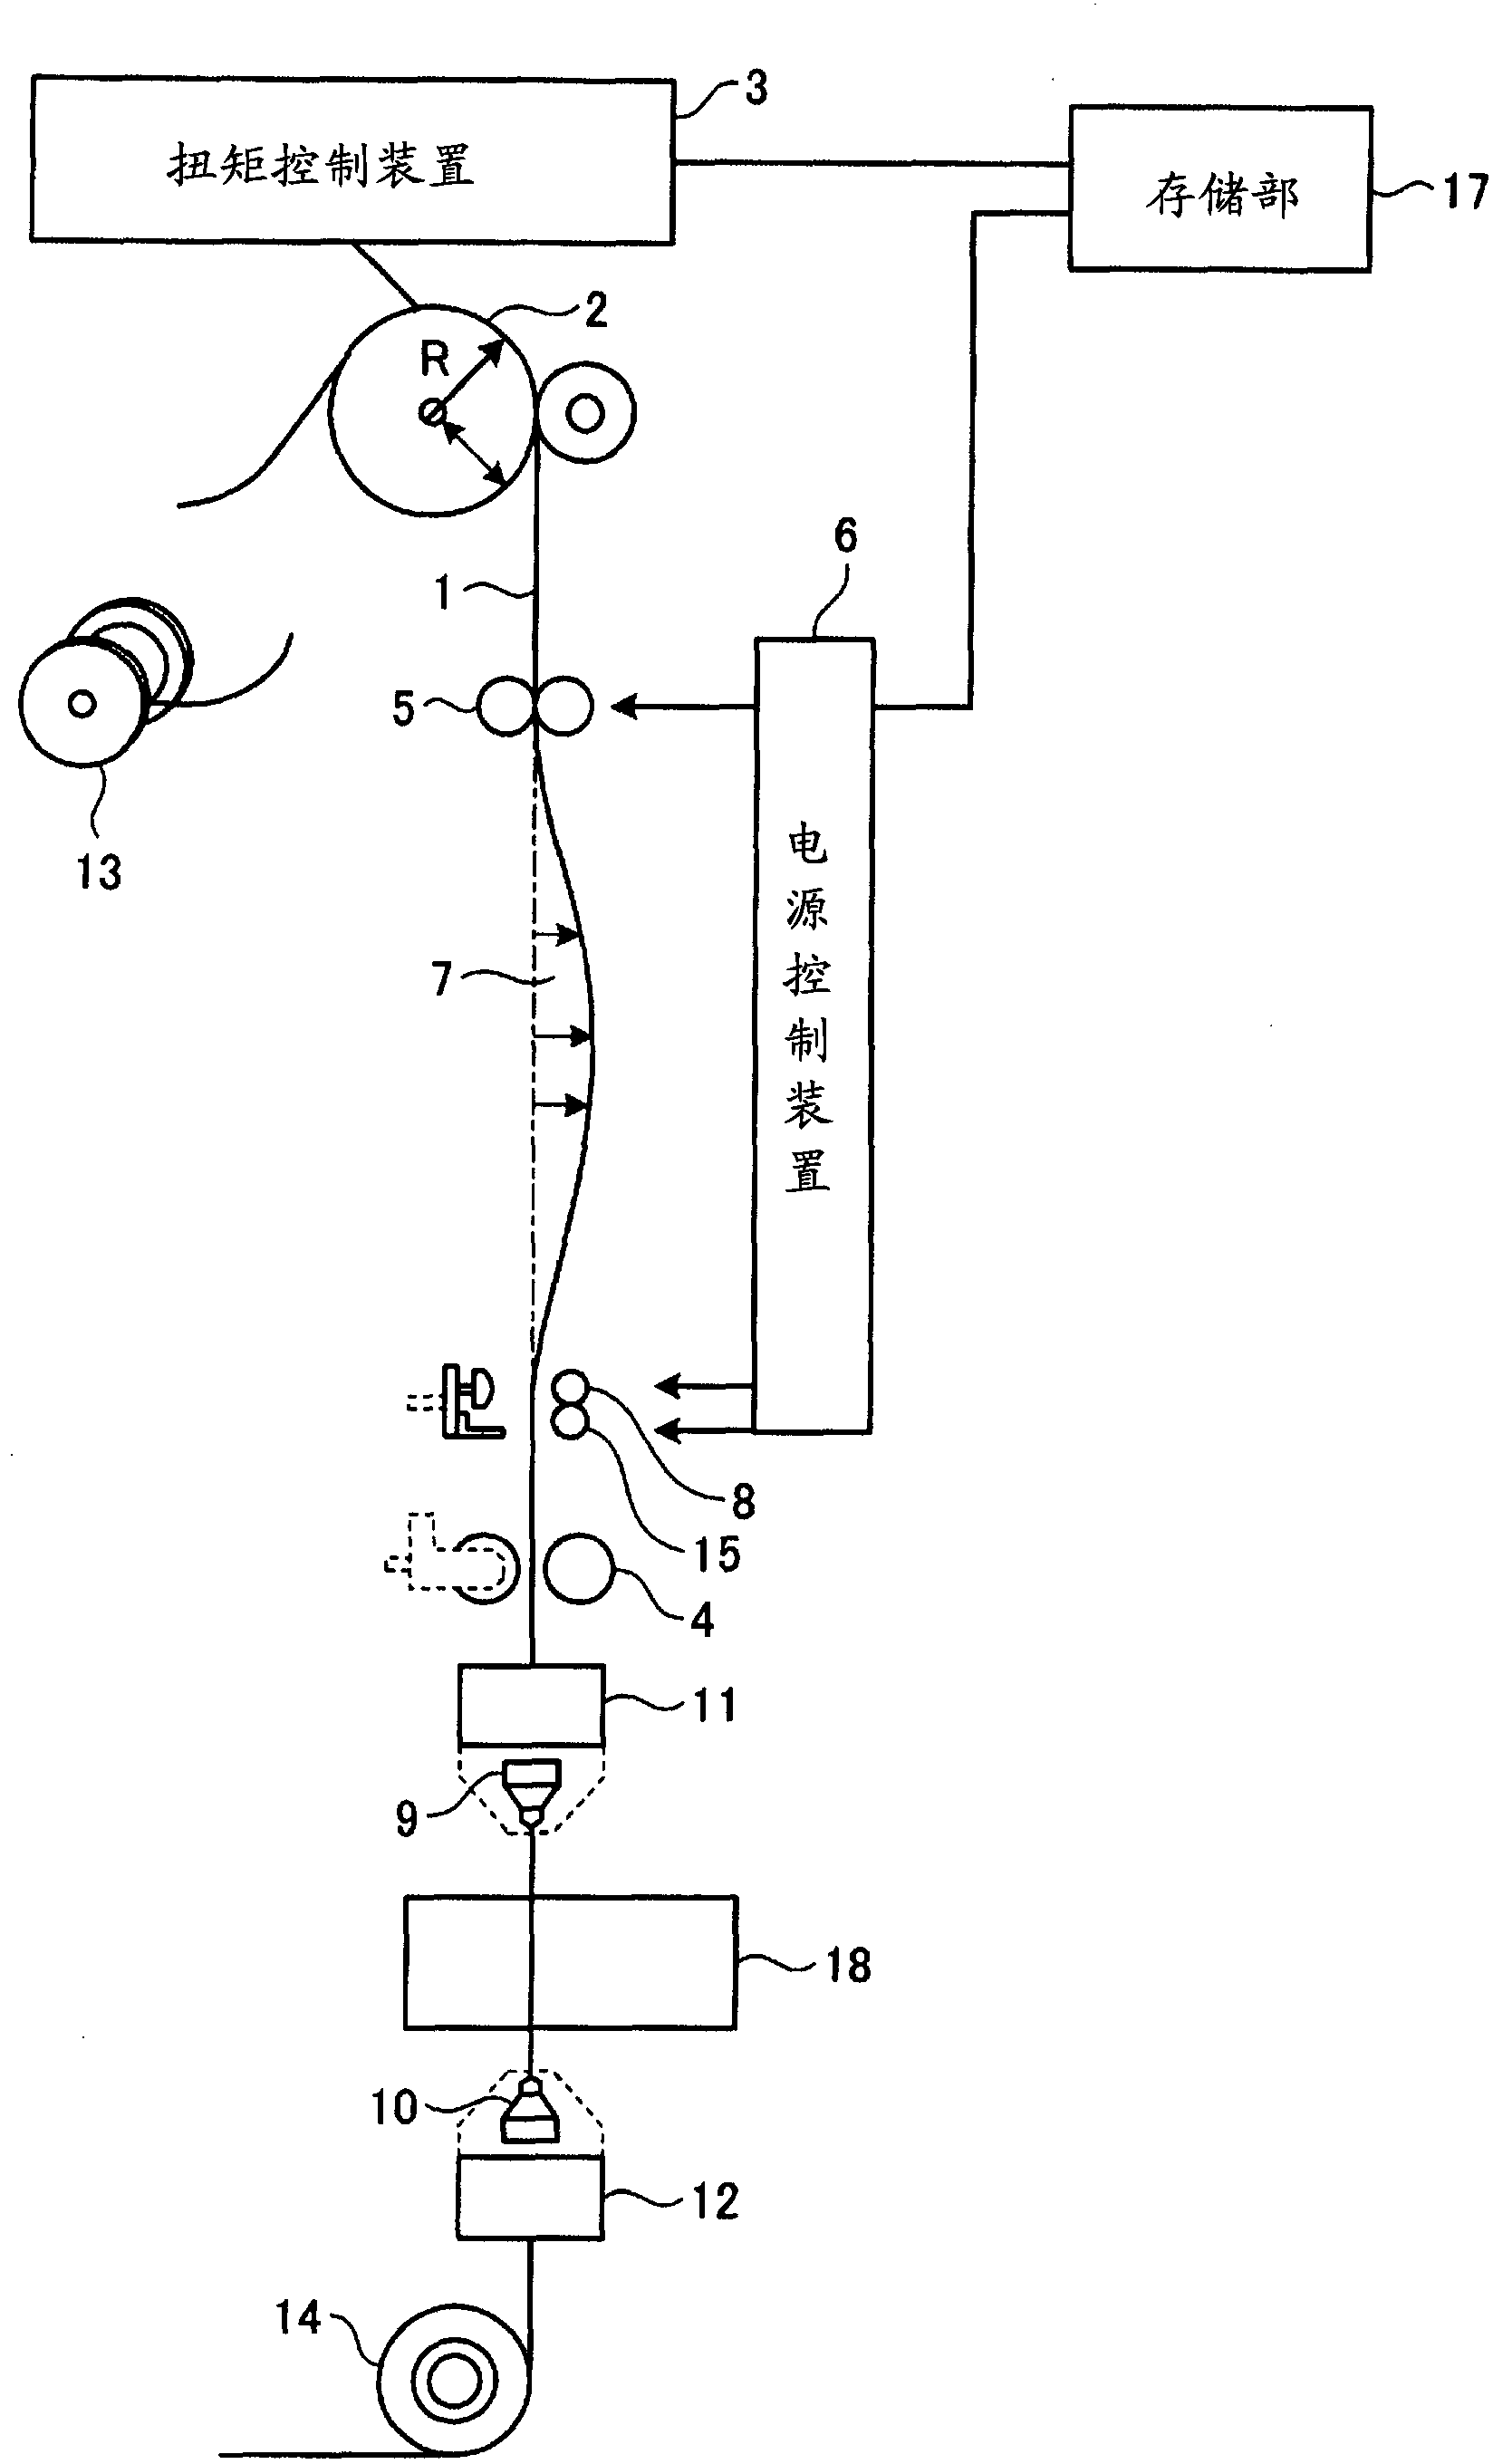 Automatic wire bonder